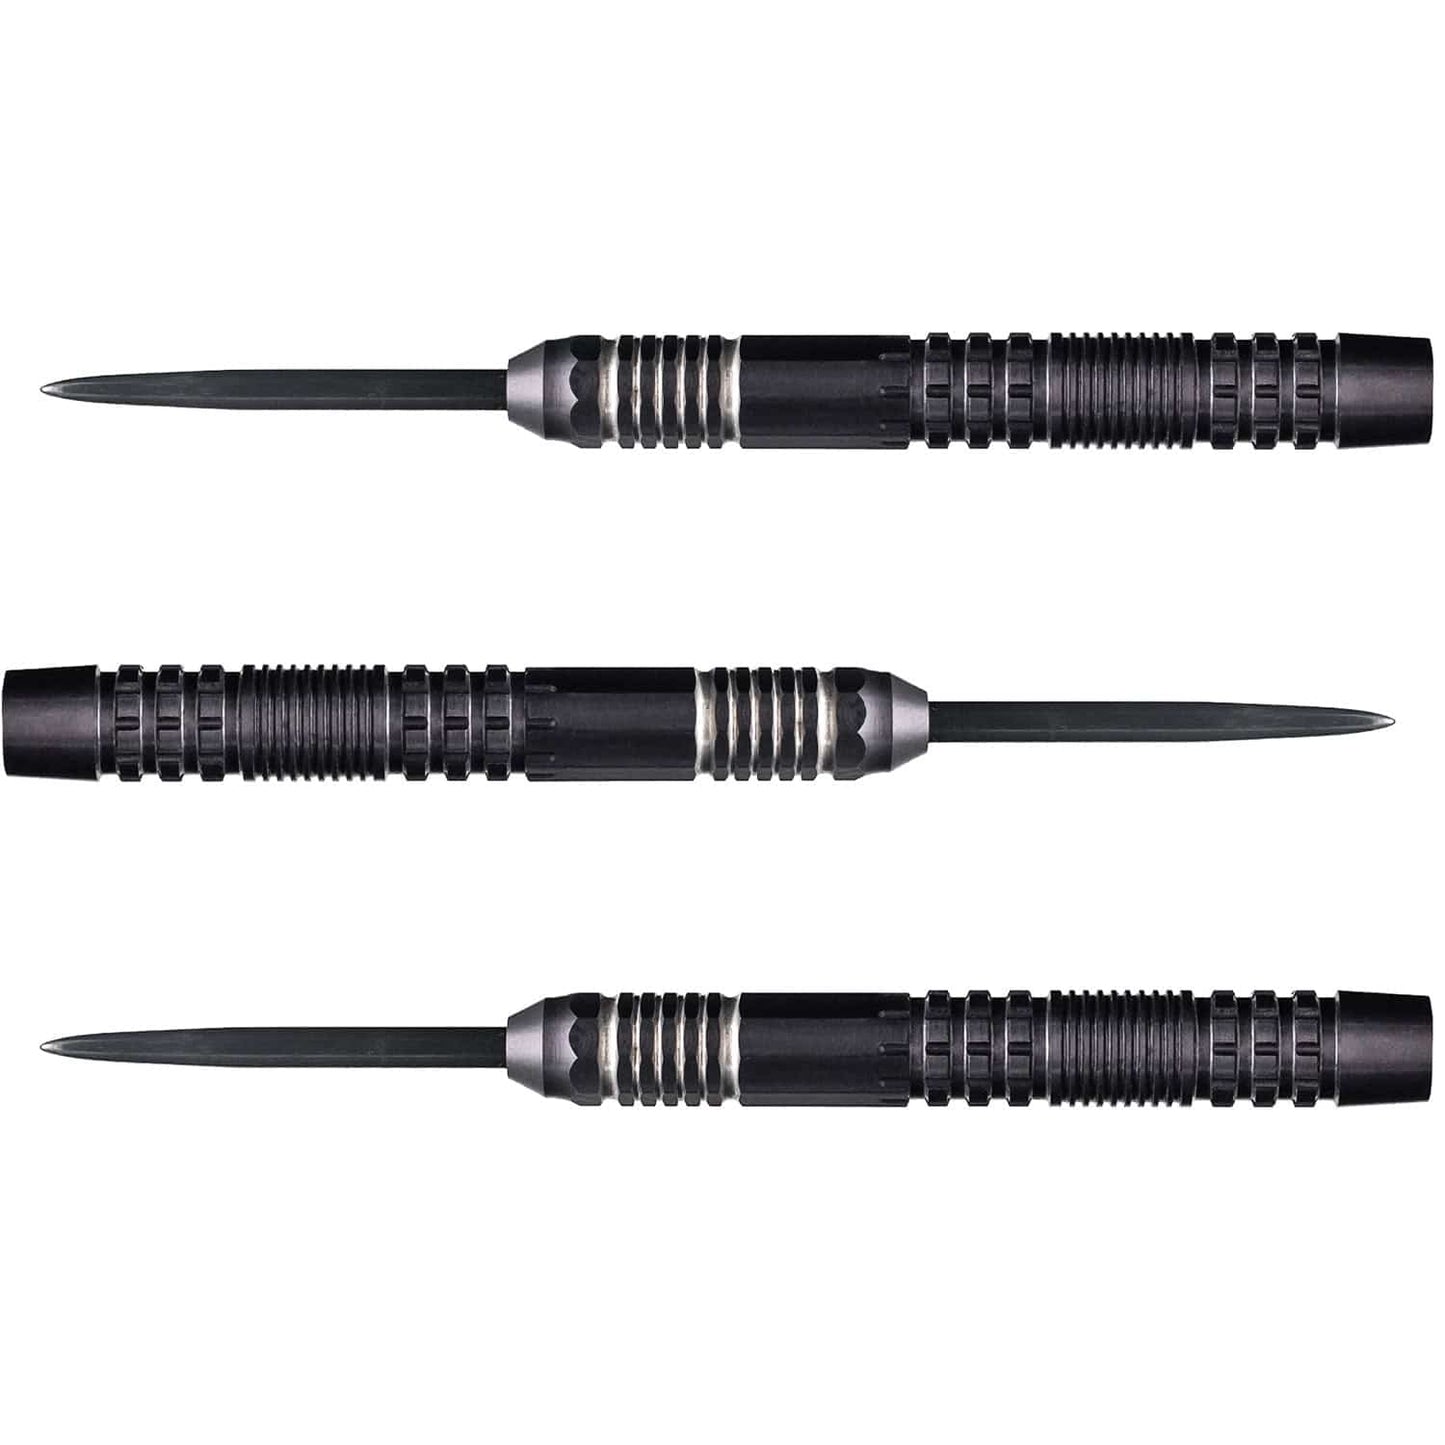 Caliburn Matrix I Darts - Steel Tip - 90% - C1 - Black